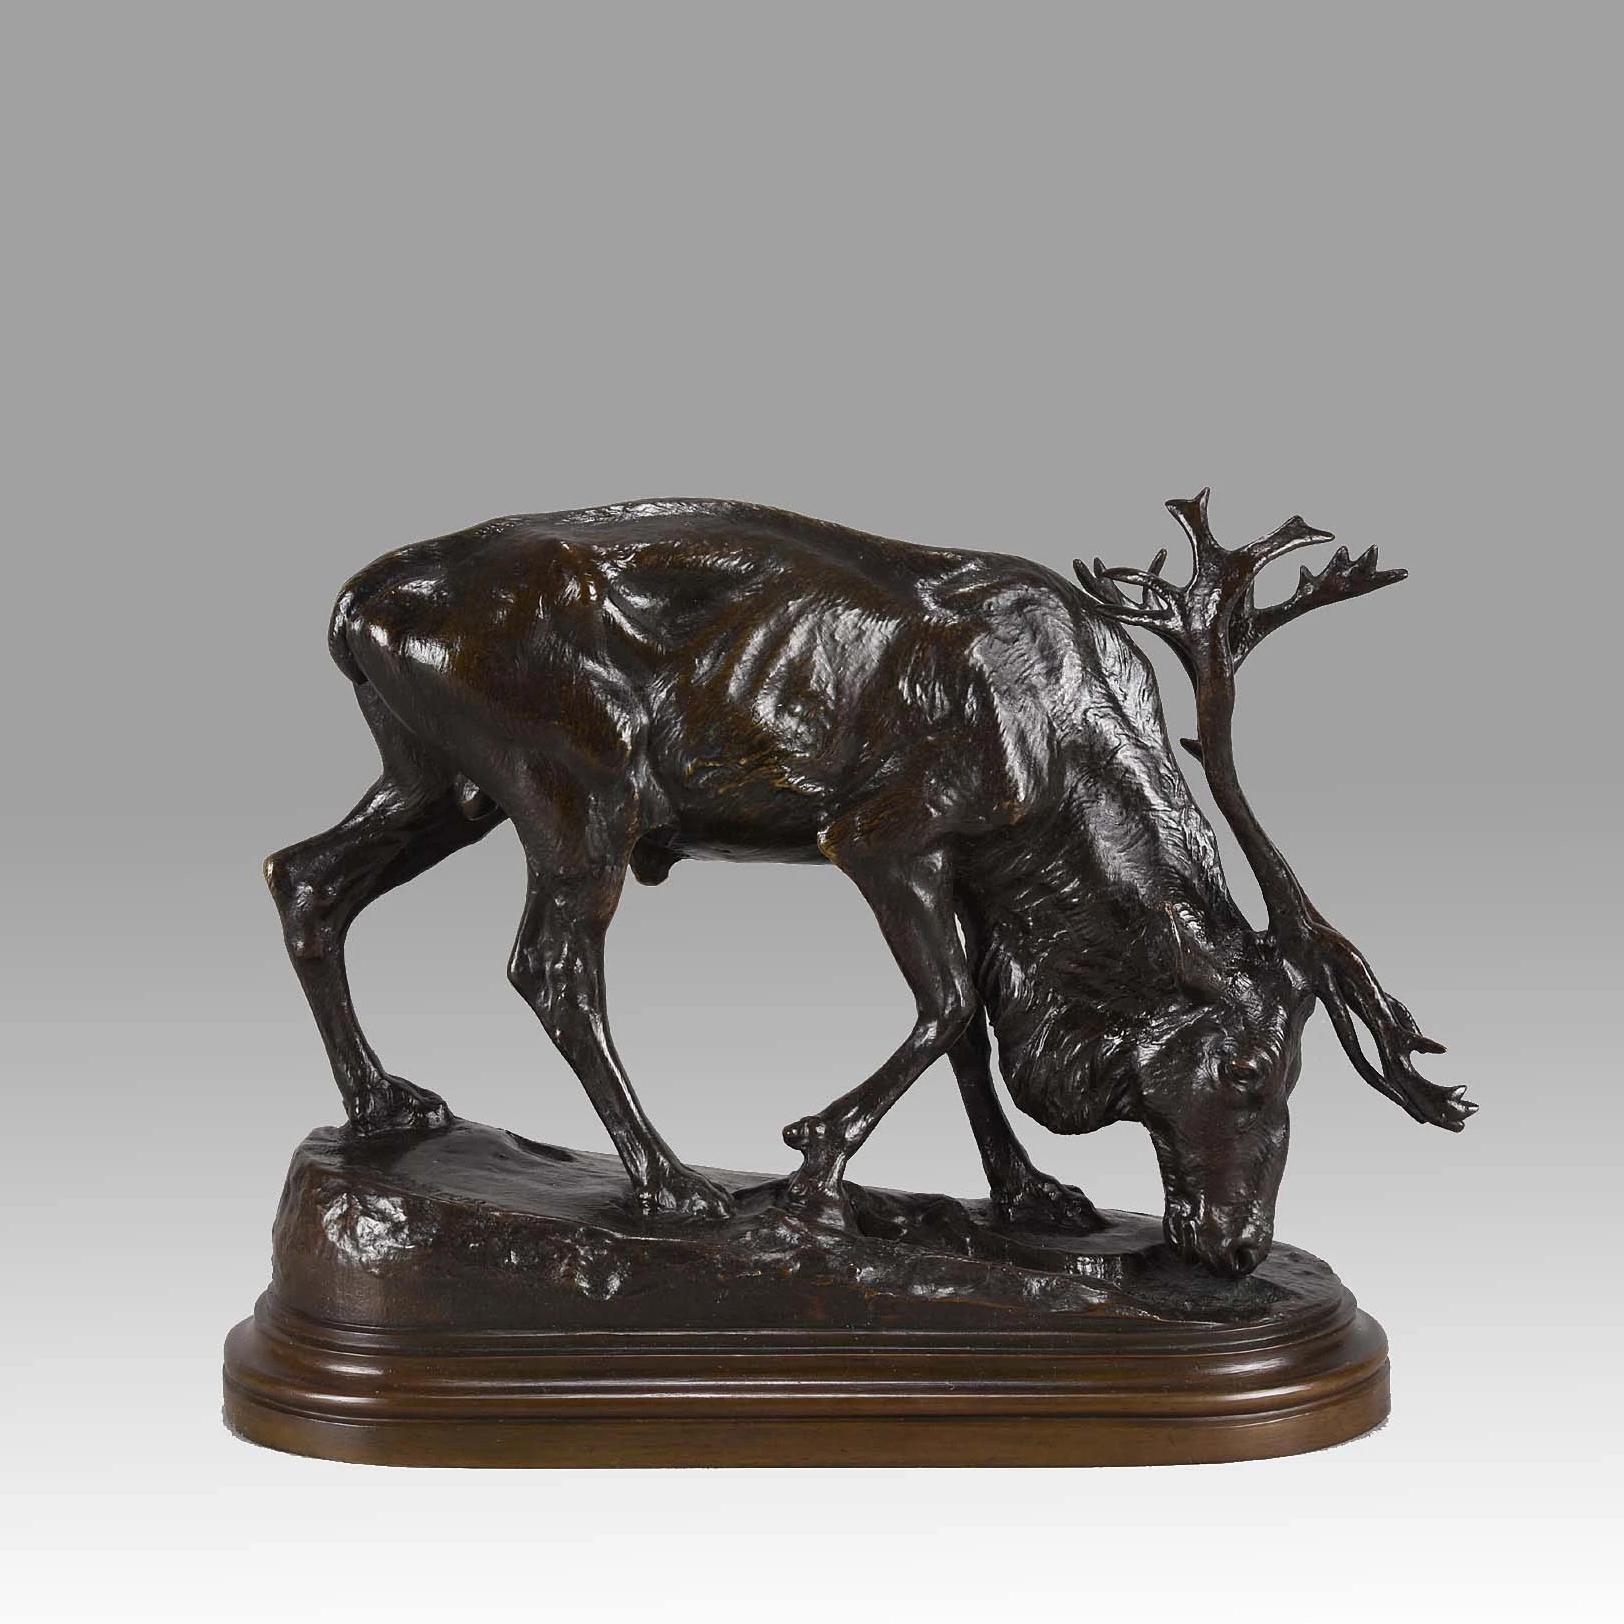 Excellente étude en bronze animalier de la fin du 19e siècle représentant un renne en train de se nourrir, avec une riche couleur brune et de très beaux détails de surface ciselés et gravés à la main, reposant sur une base naturaliste à gradins,